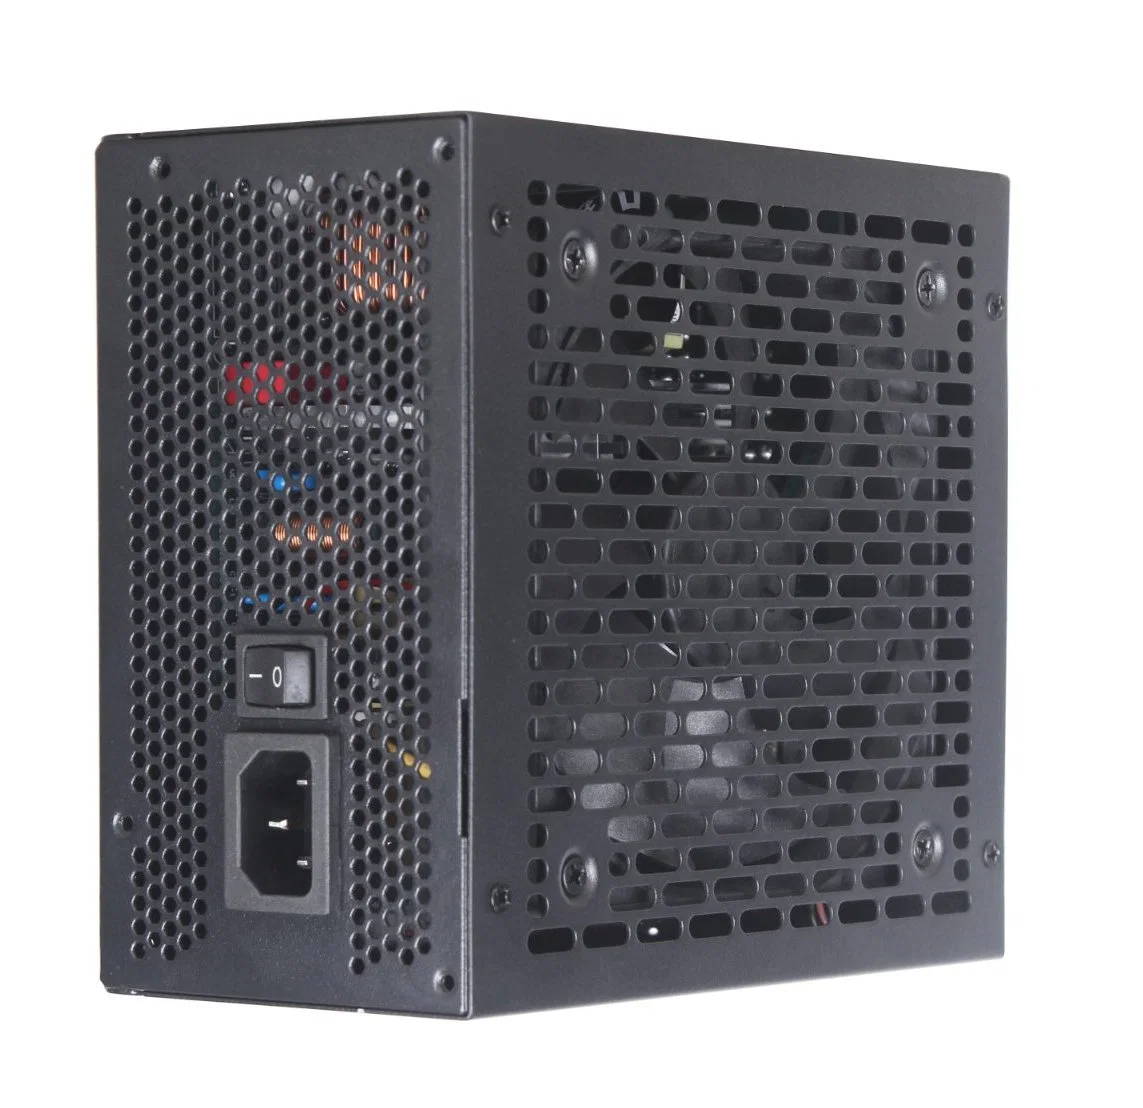 Источник питания ATX PC 700W полностью модульный 80 плюс блок питания ПК питание для настольного компьютера